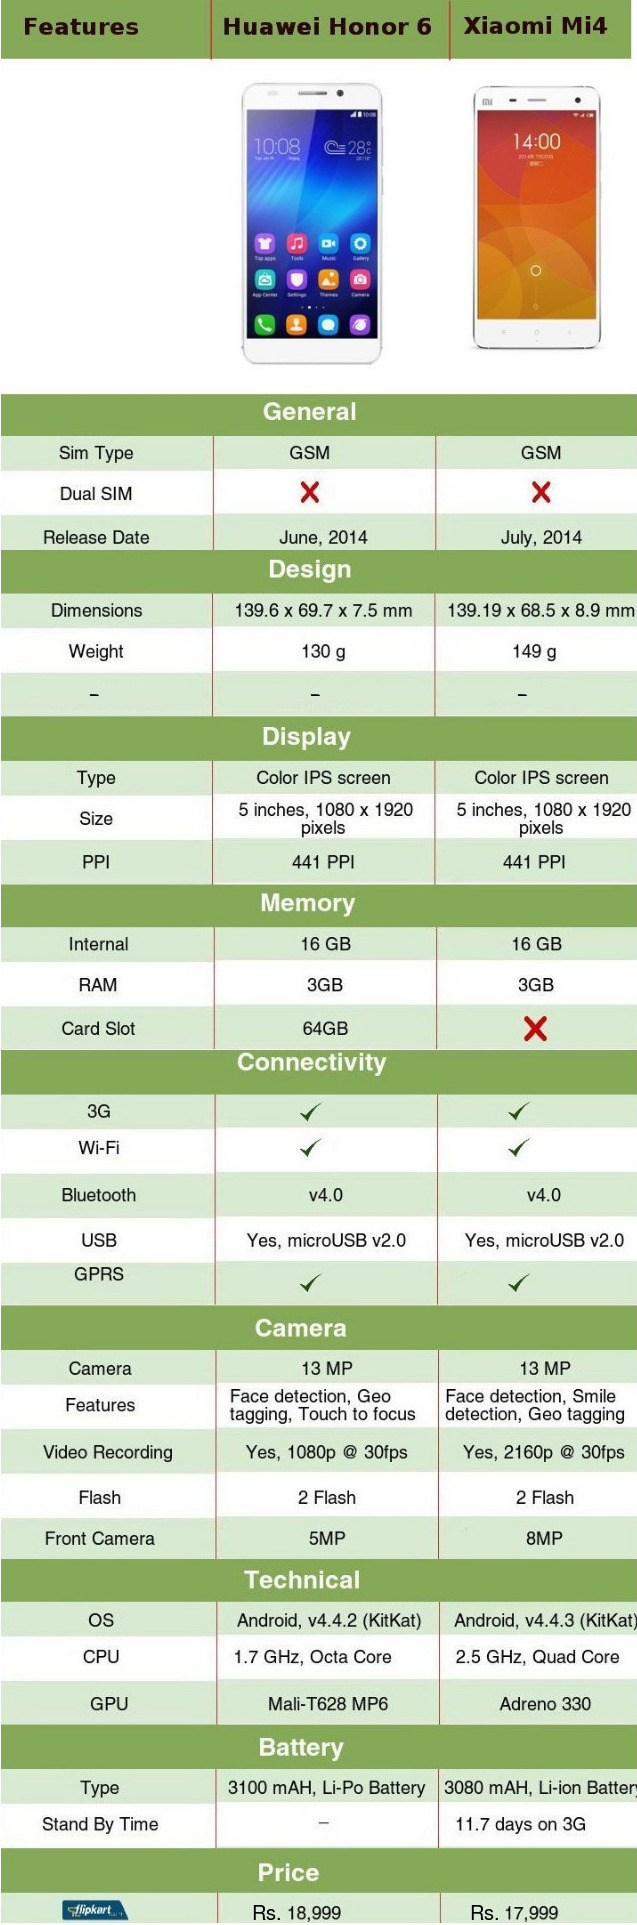 Huawei Honor 6 vs Xiaomi Mi4